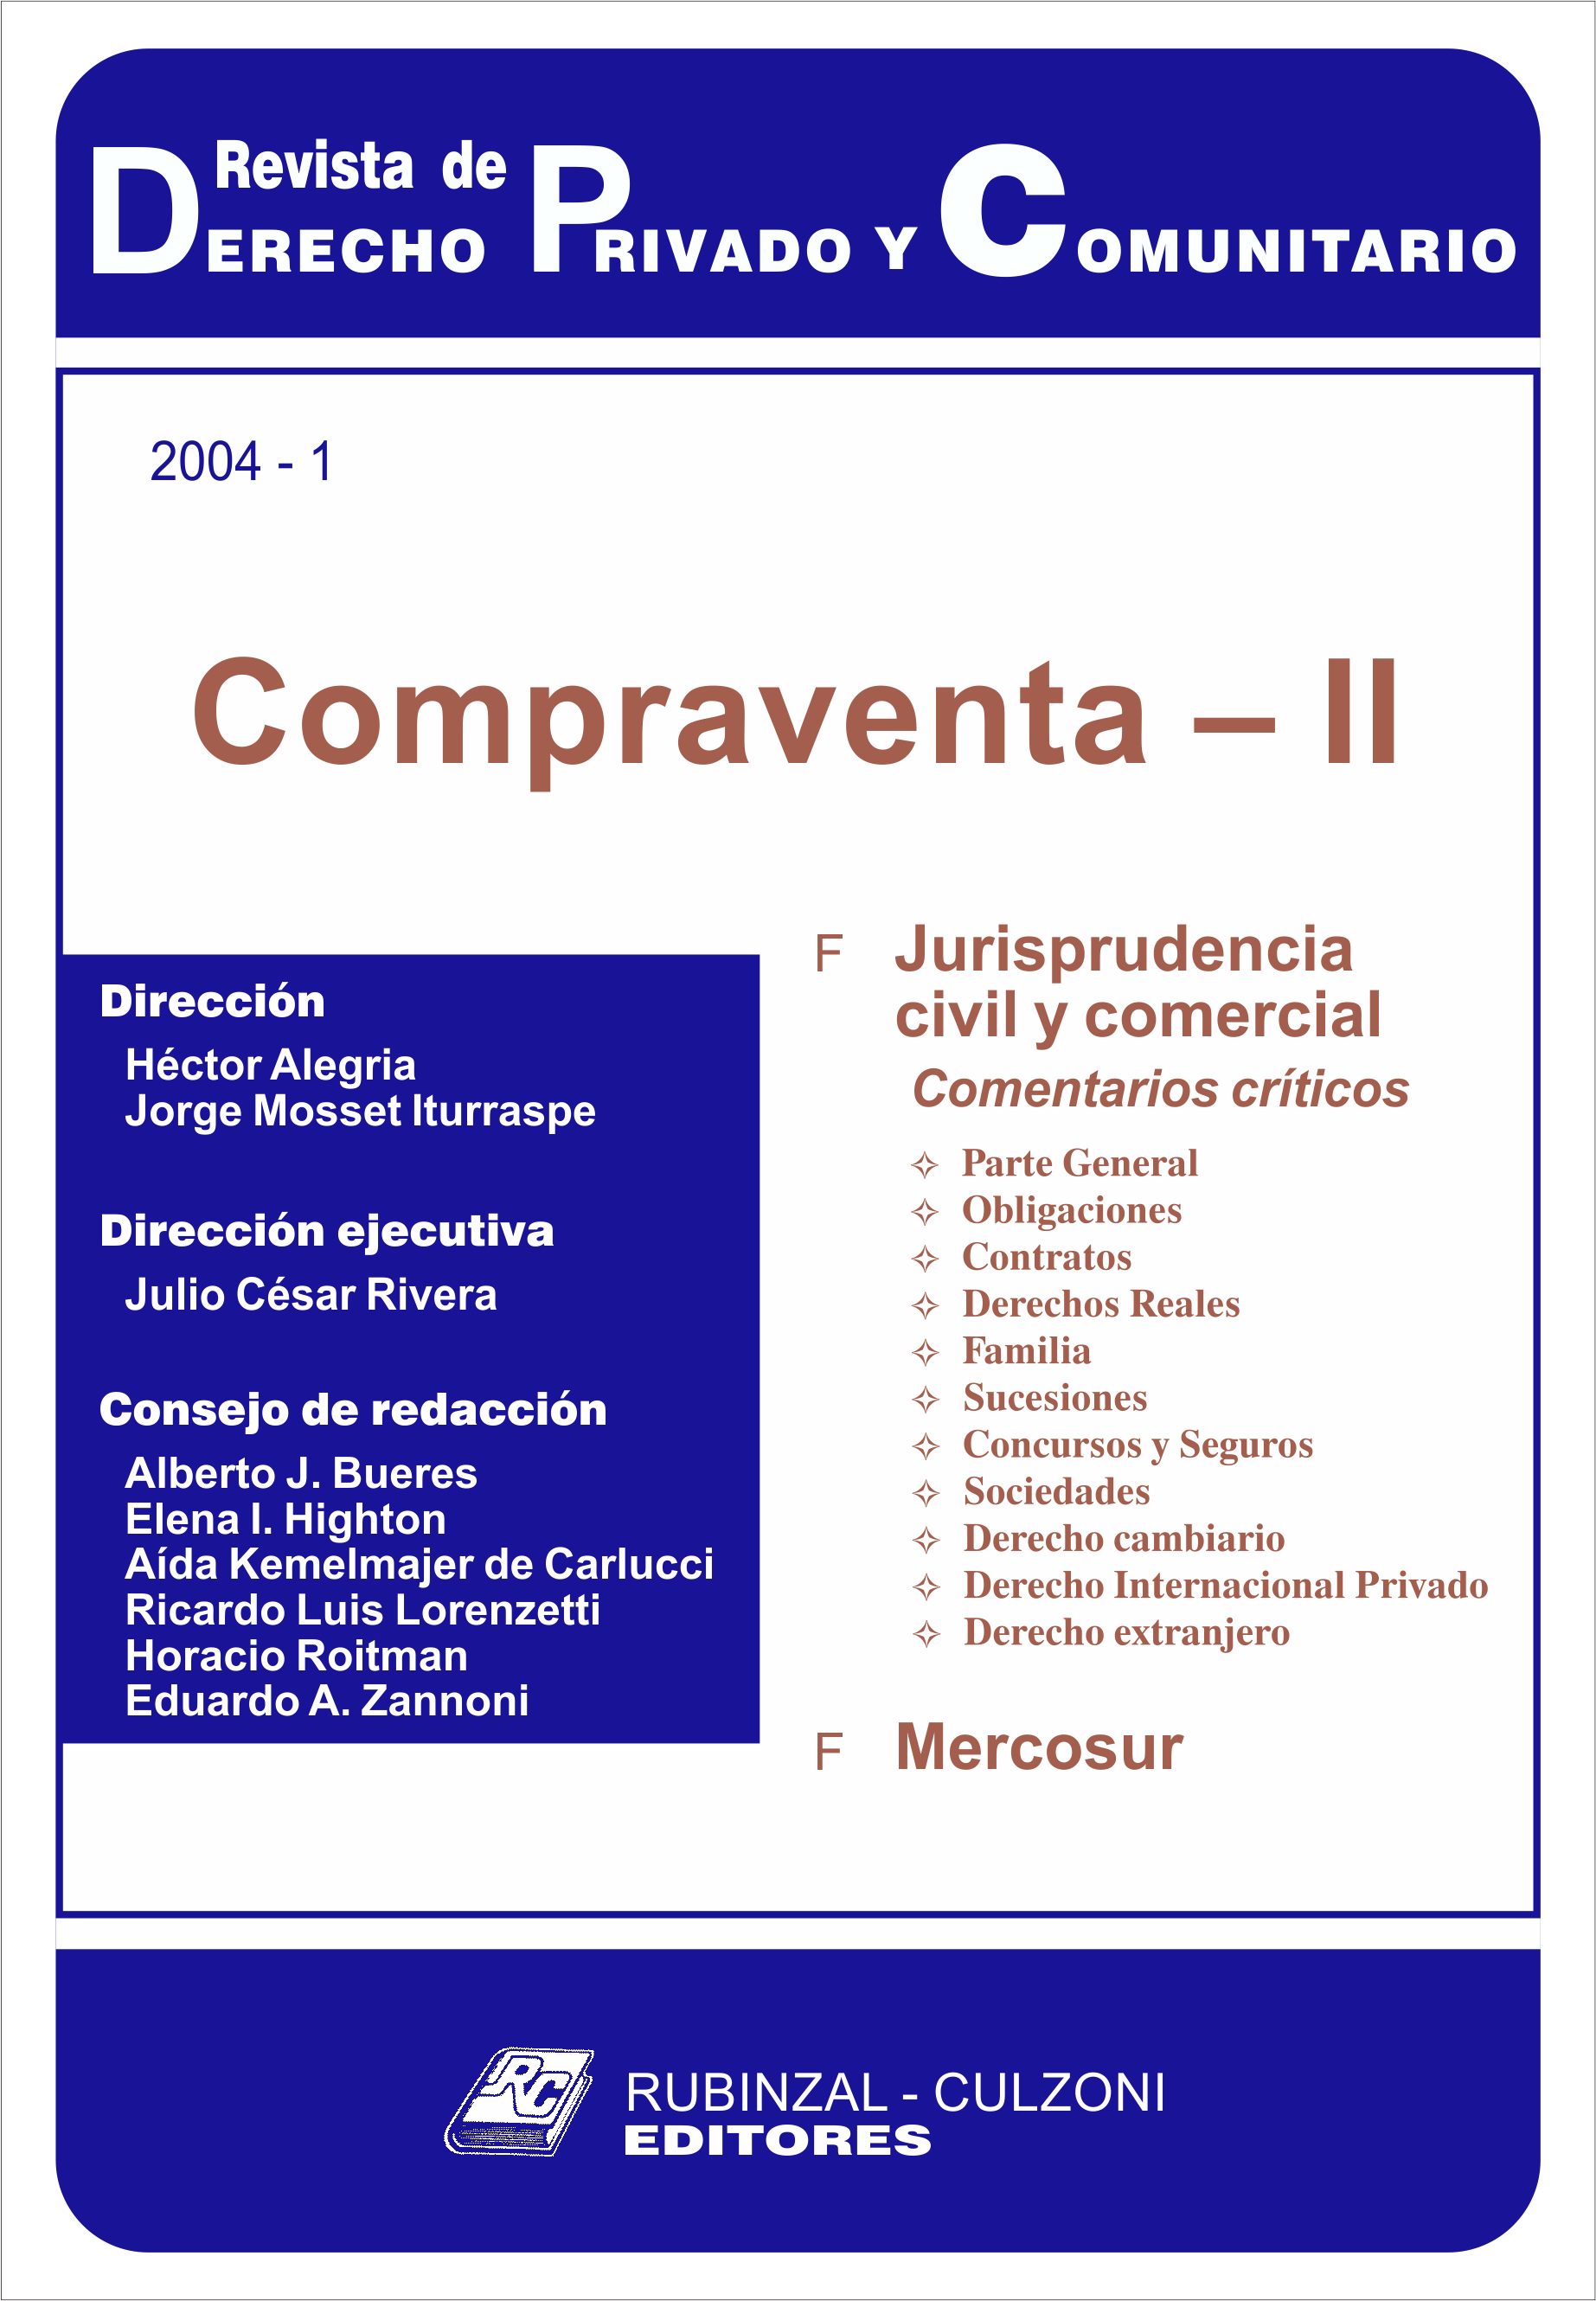 Revista de Derecho Privado y Comunitario - Compraventa - II